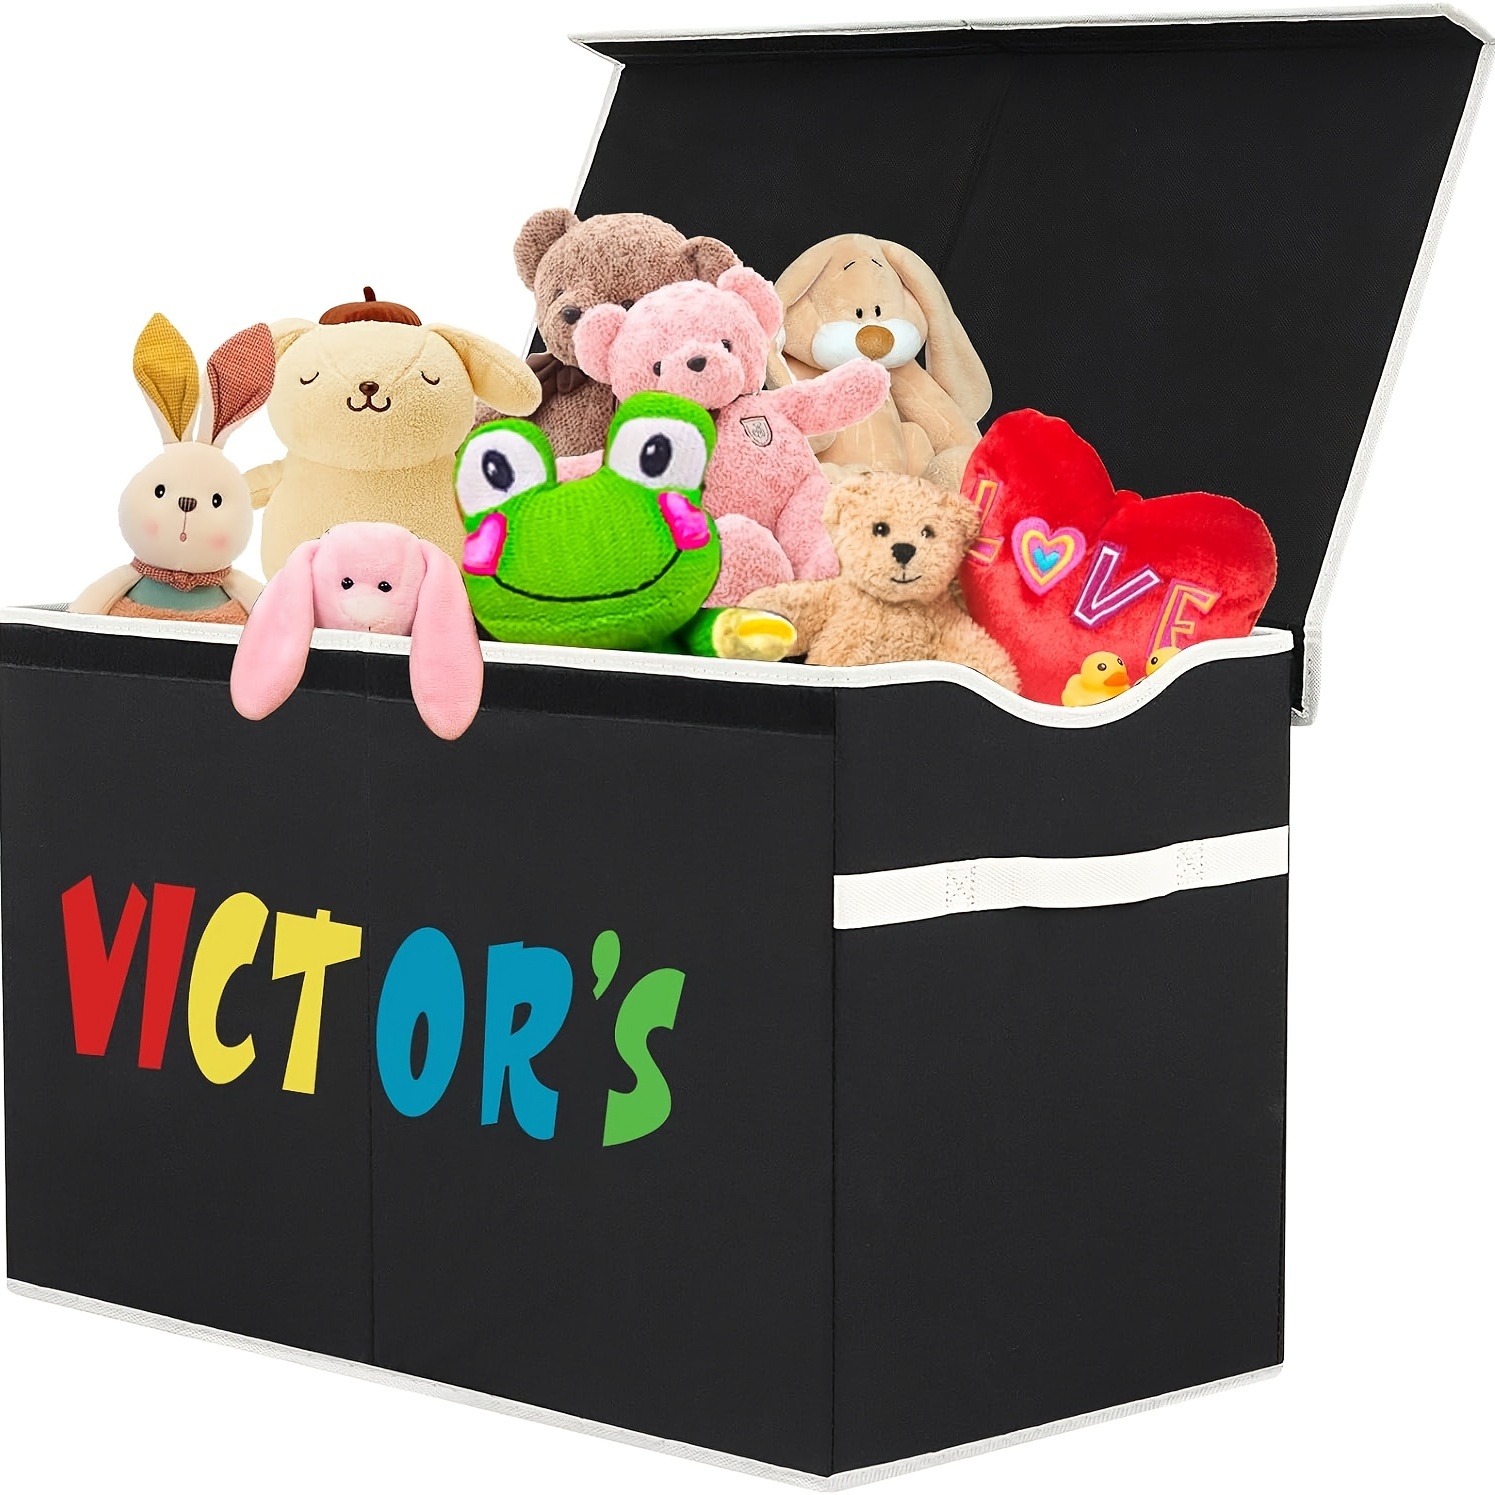 VICTOR'S Caja de juguetes para niños, extra grande, plegable, ligera,  organizadora de juguetes, cestas para niños, niñas, cuarto de bebé, sala de